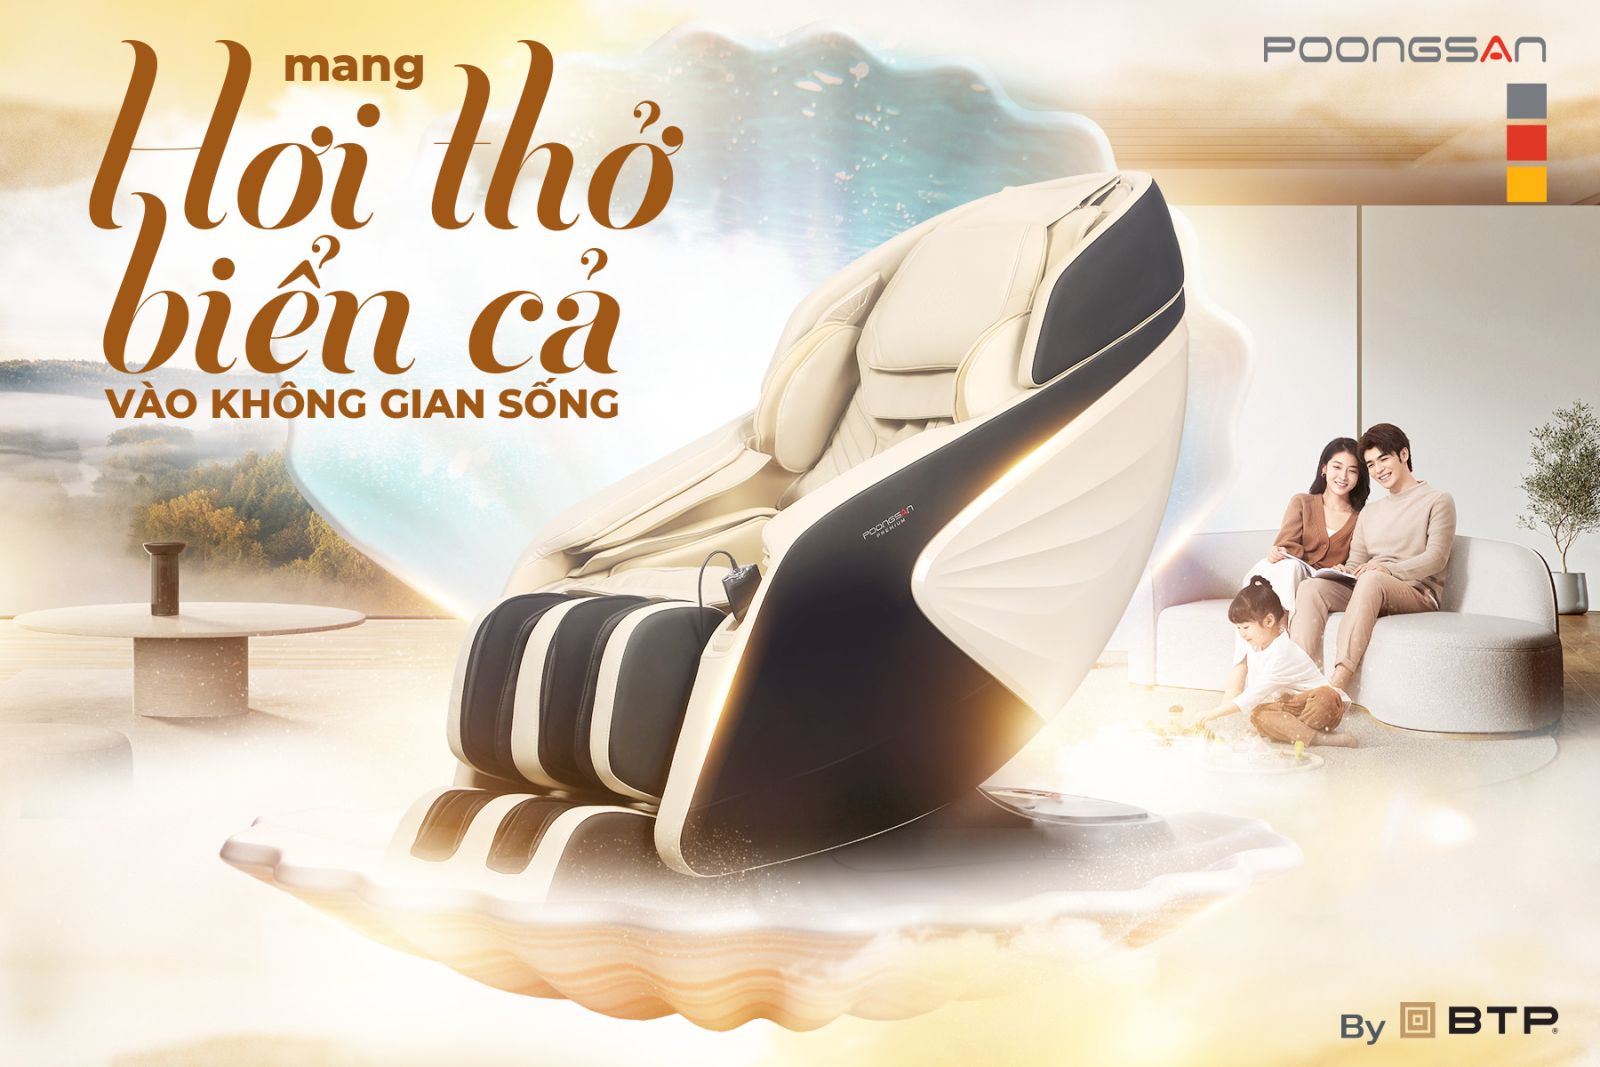 Ghế massage Poongsan MCP-502 mang hơi thở biển cả vào không gian sống